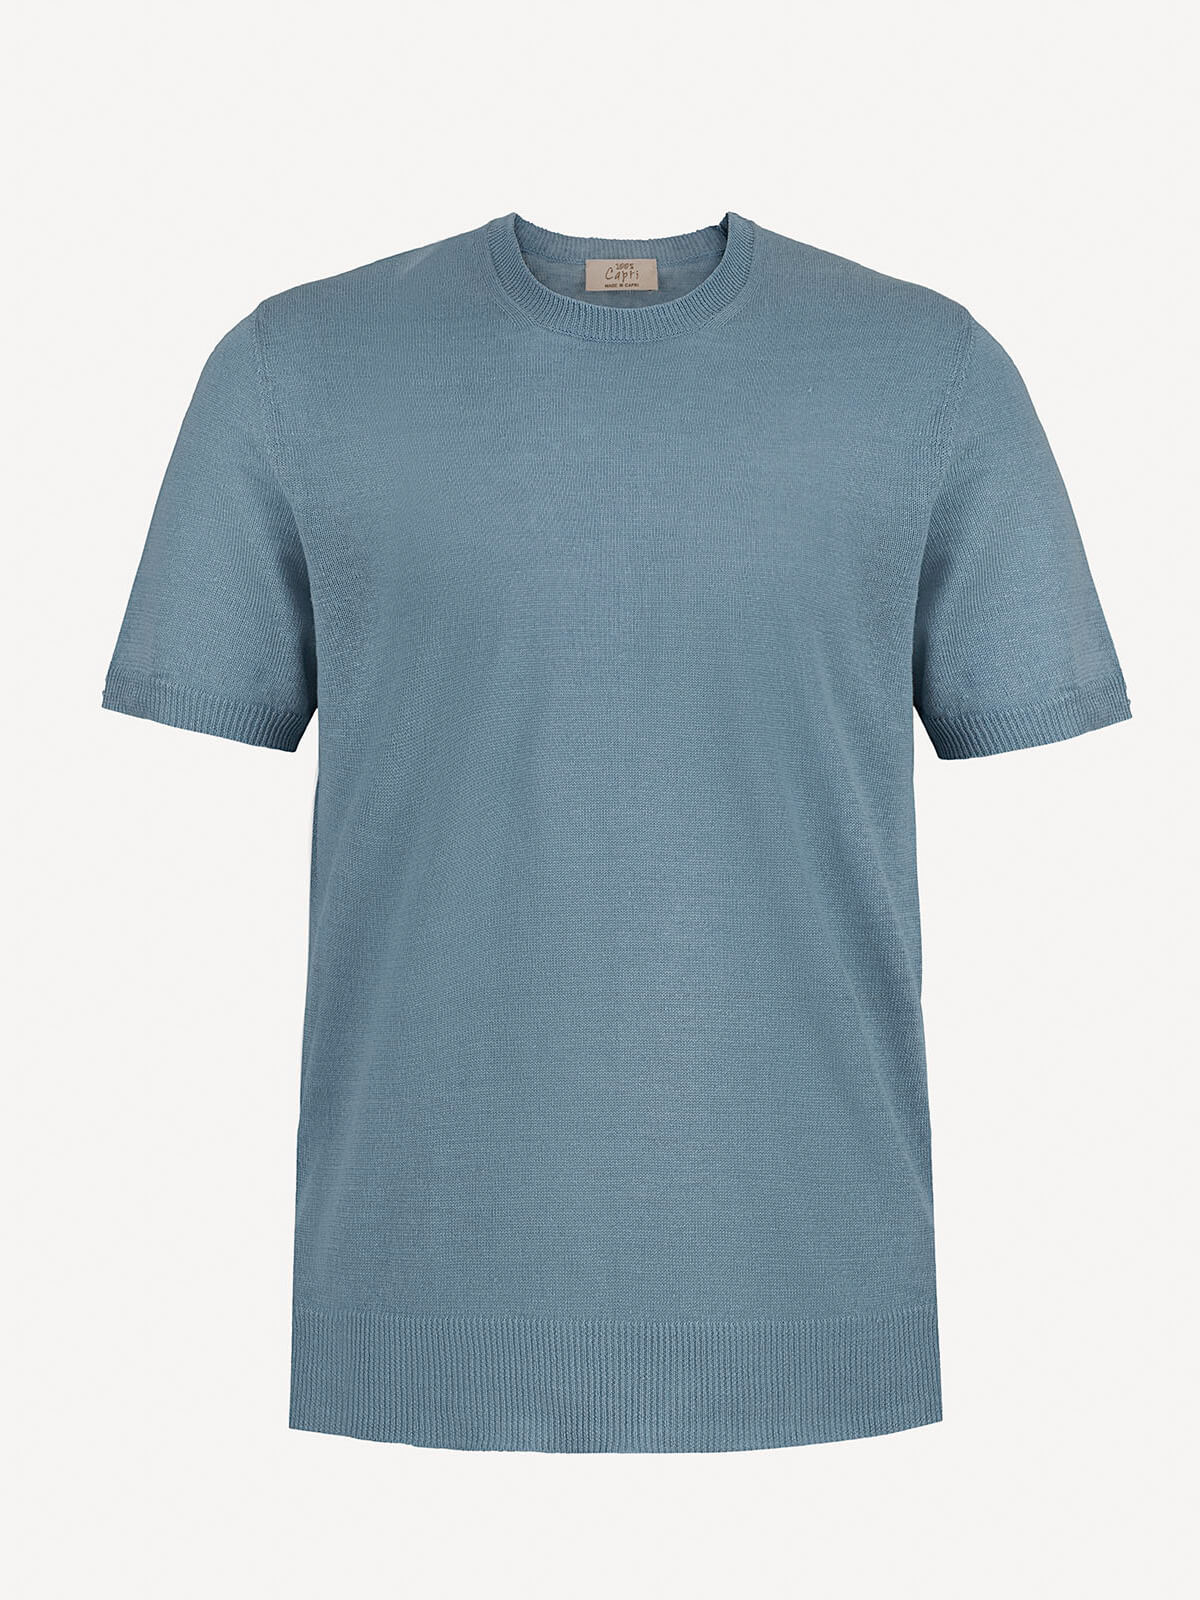 Linen tshirt for man jeans color front view 100% Capri